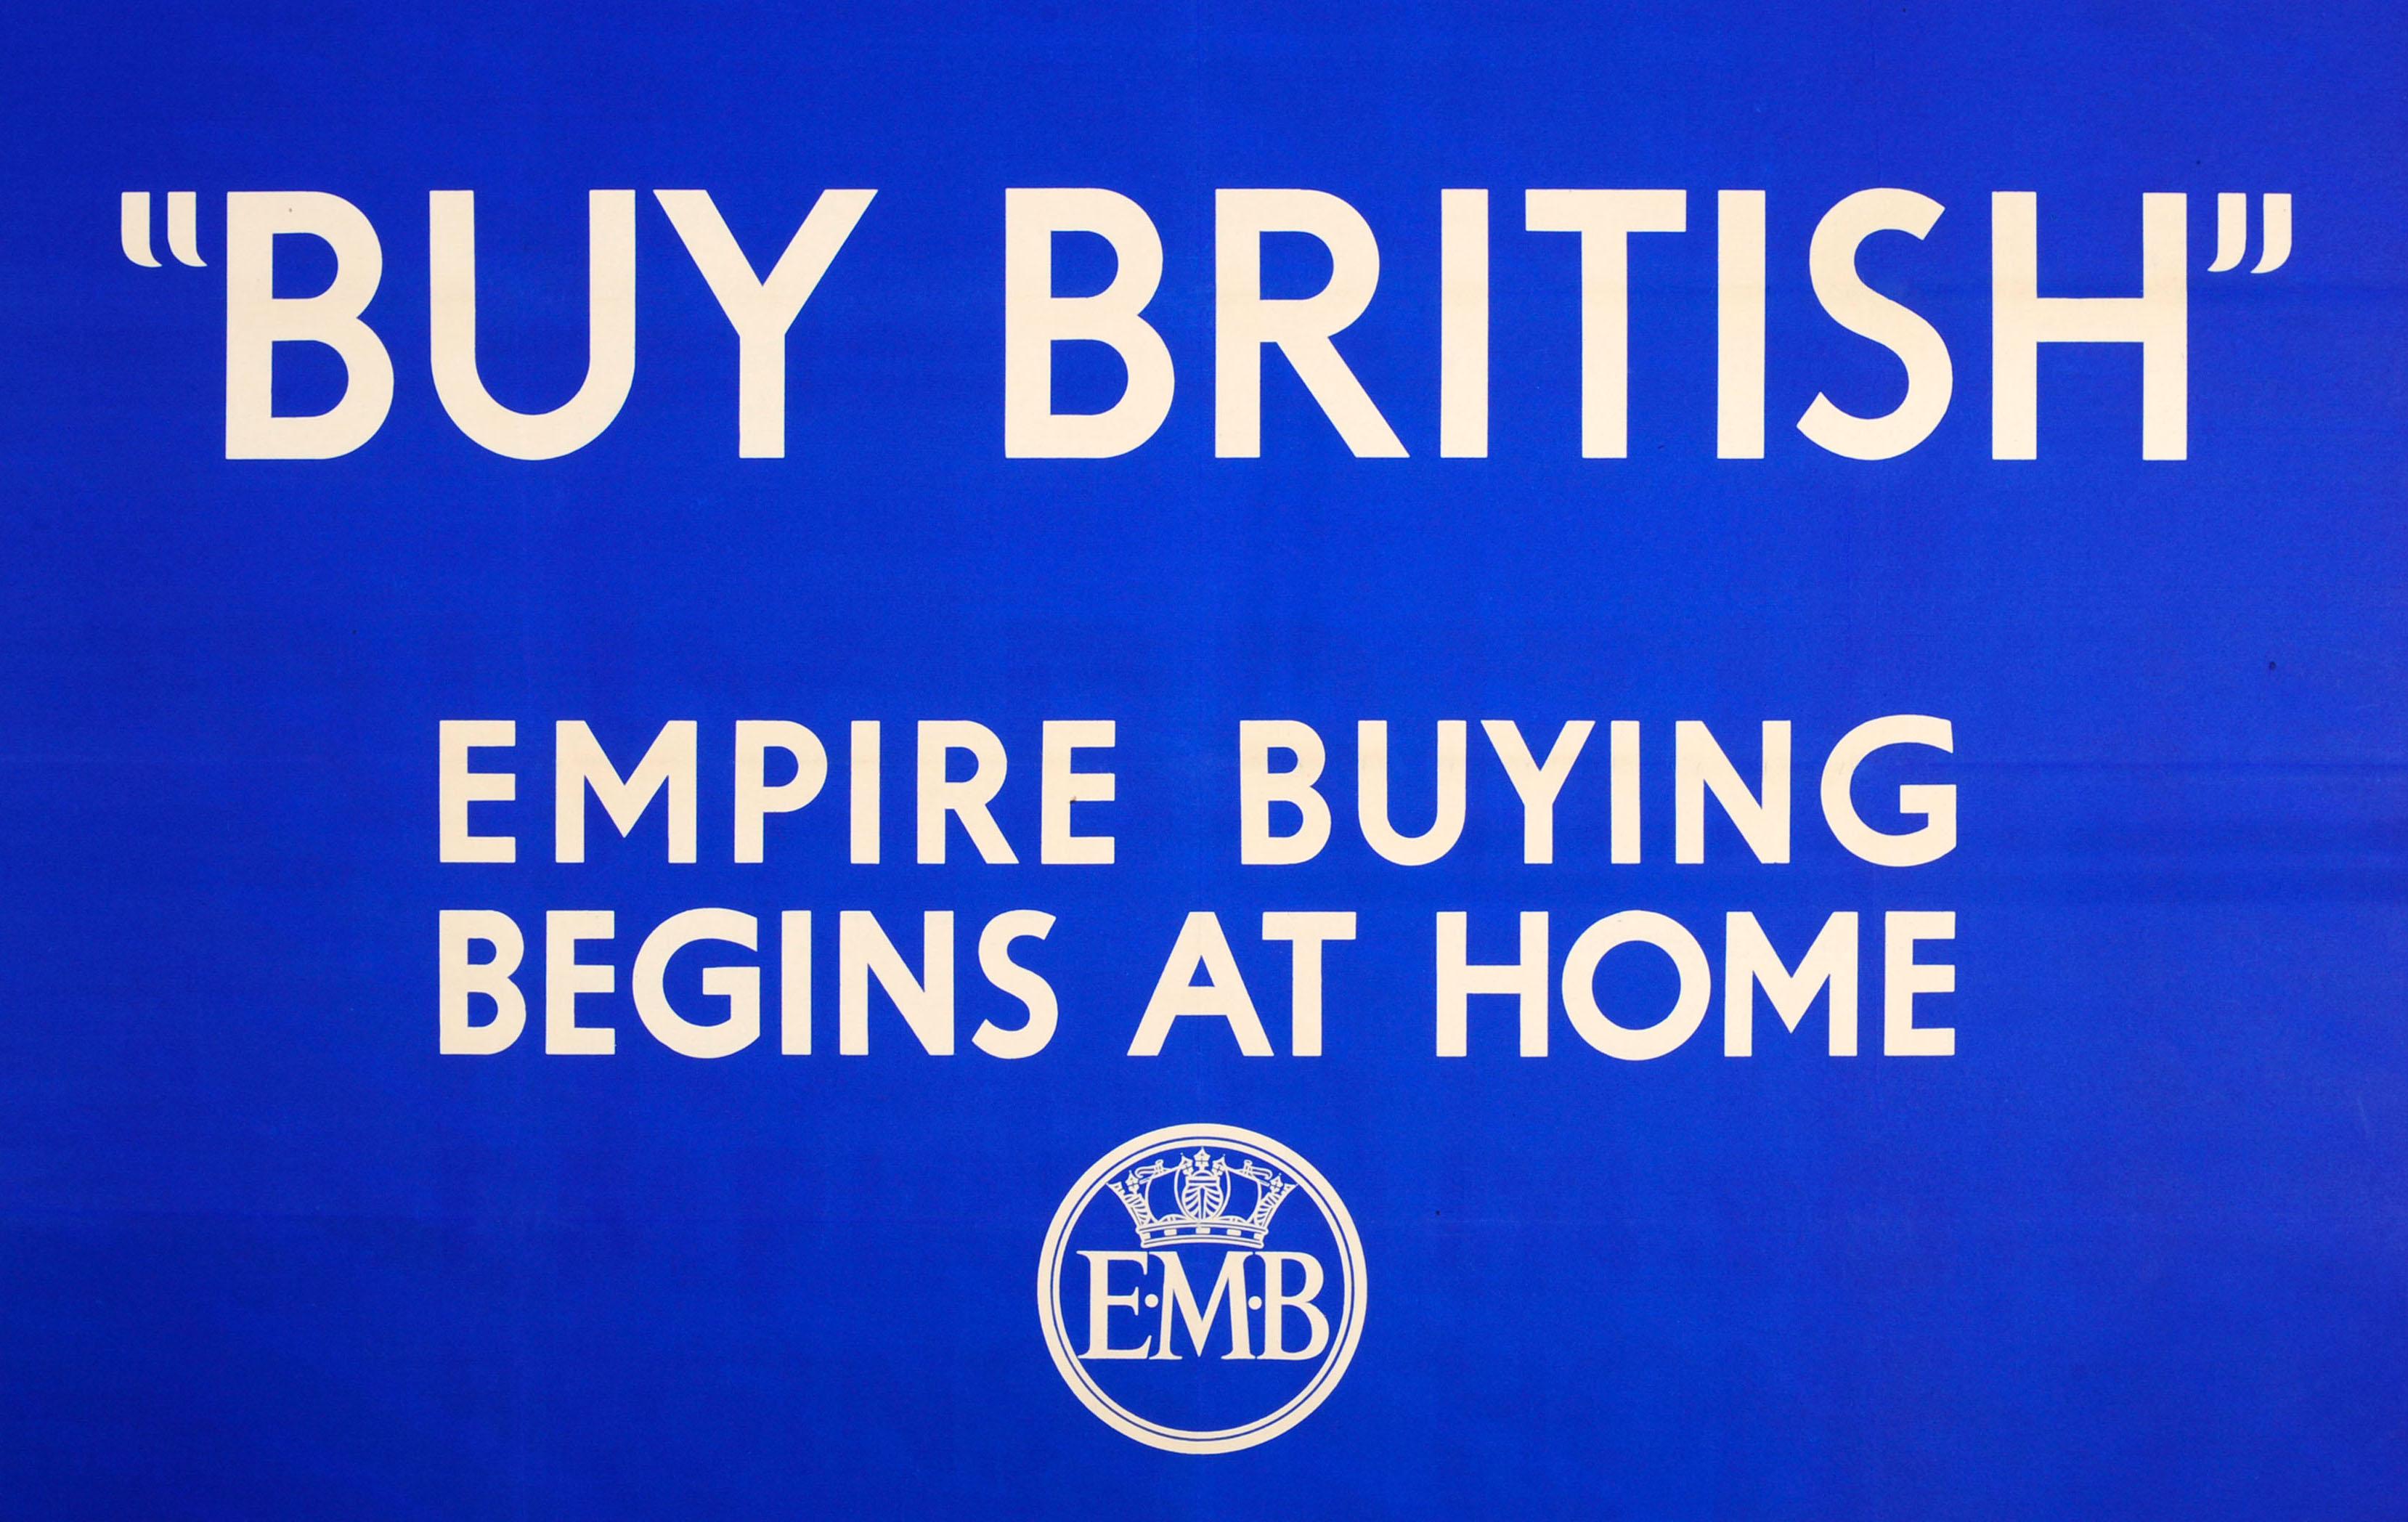 Affiche publicitaire vintage originale publiée par l'Empire Marketing Board - Buy British Empire Buying Begins At Home - présentant un dessin simple et emblématique dans le style Keep Calm and Carry On avec le texte blanc sur fond bleu et le logo de